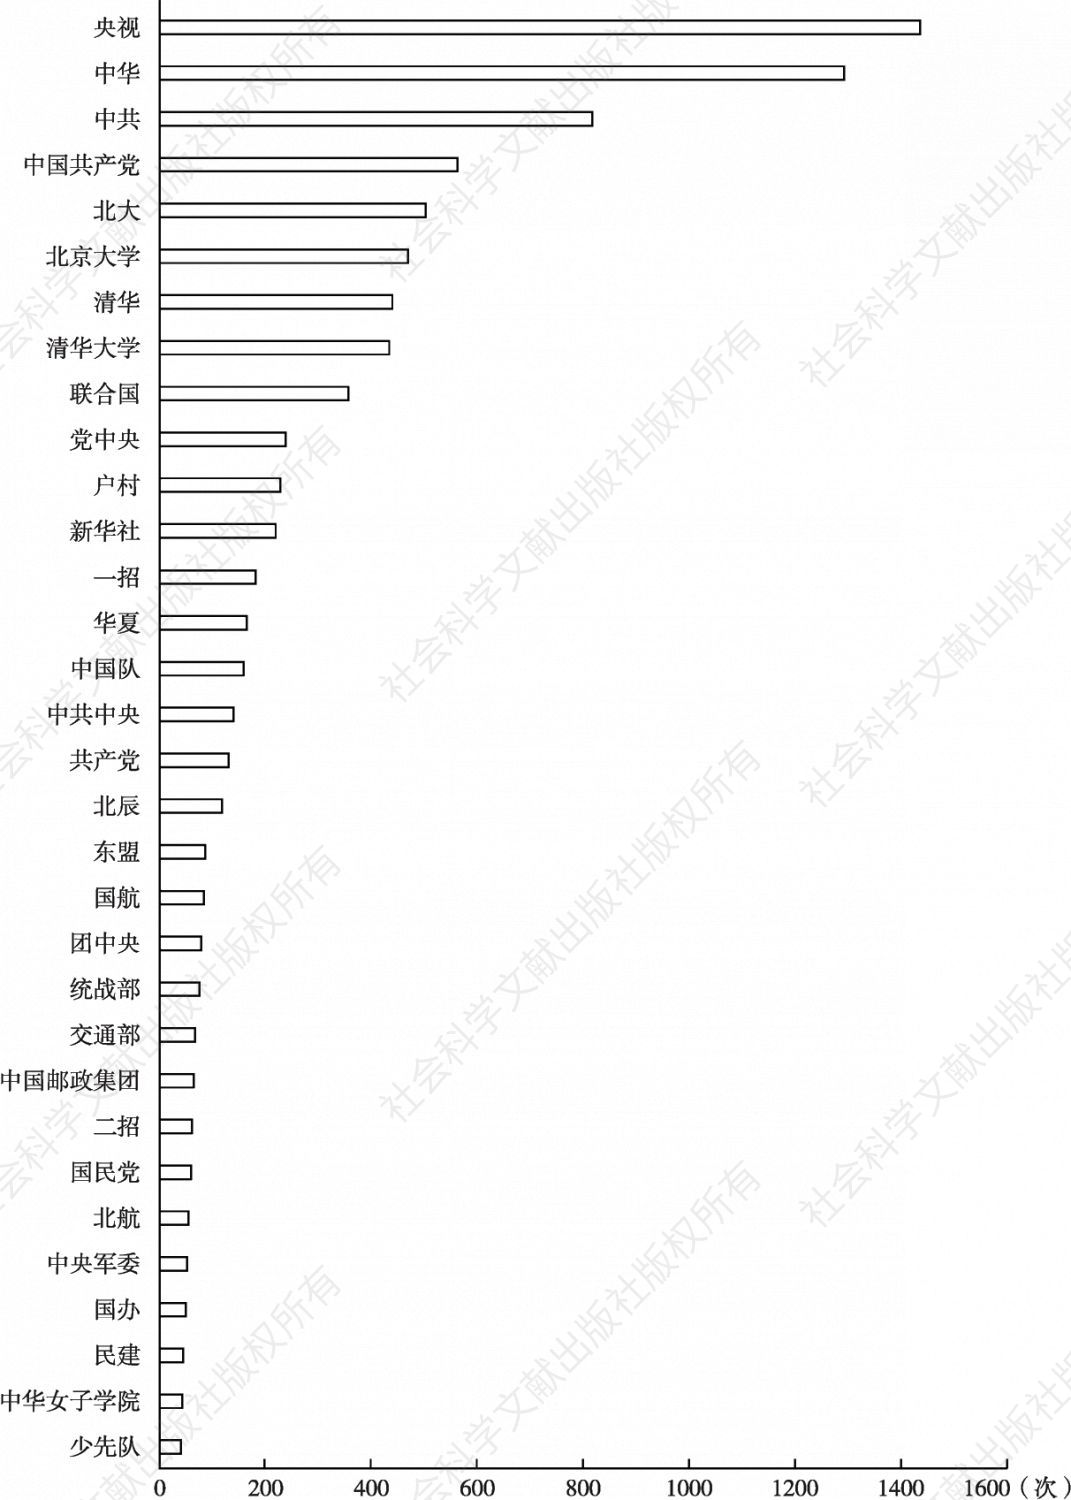 图12 北京官方微博账号发布内容中提及次数超过40次的机构、团体、组织层级排名